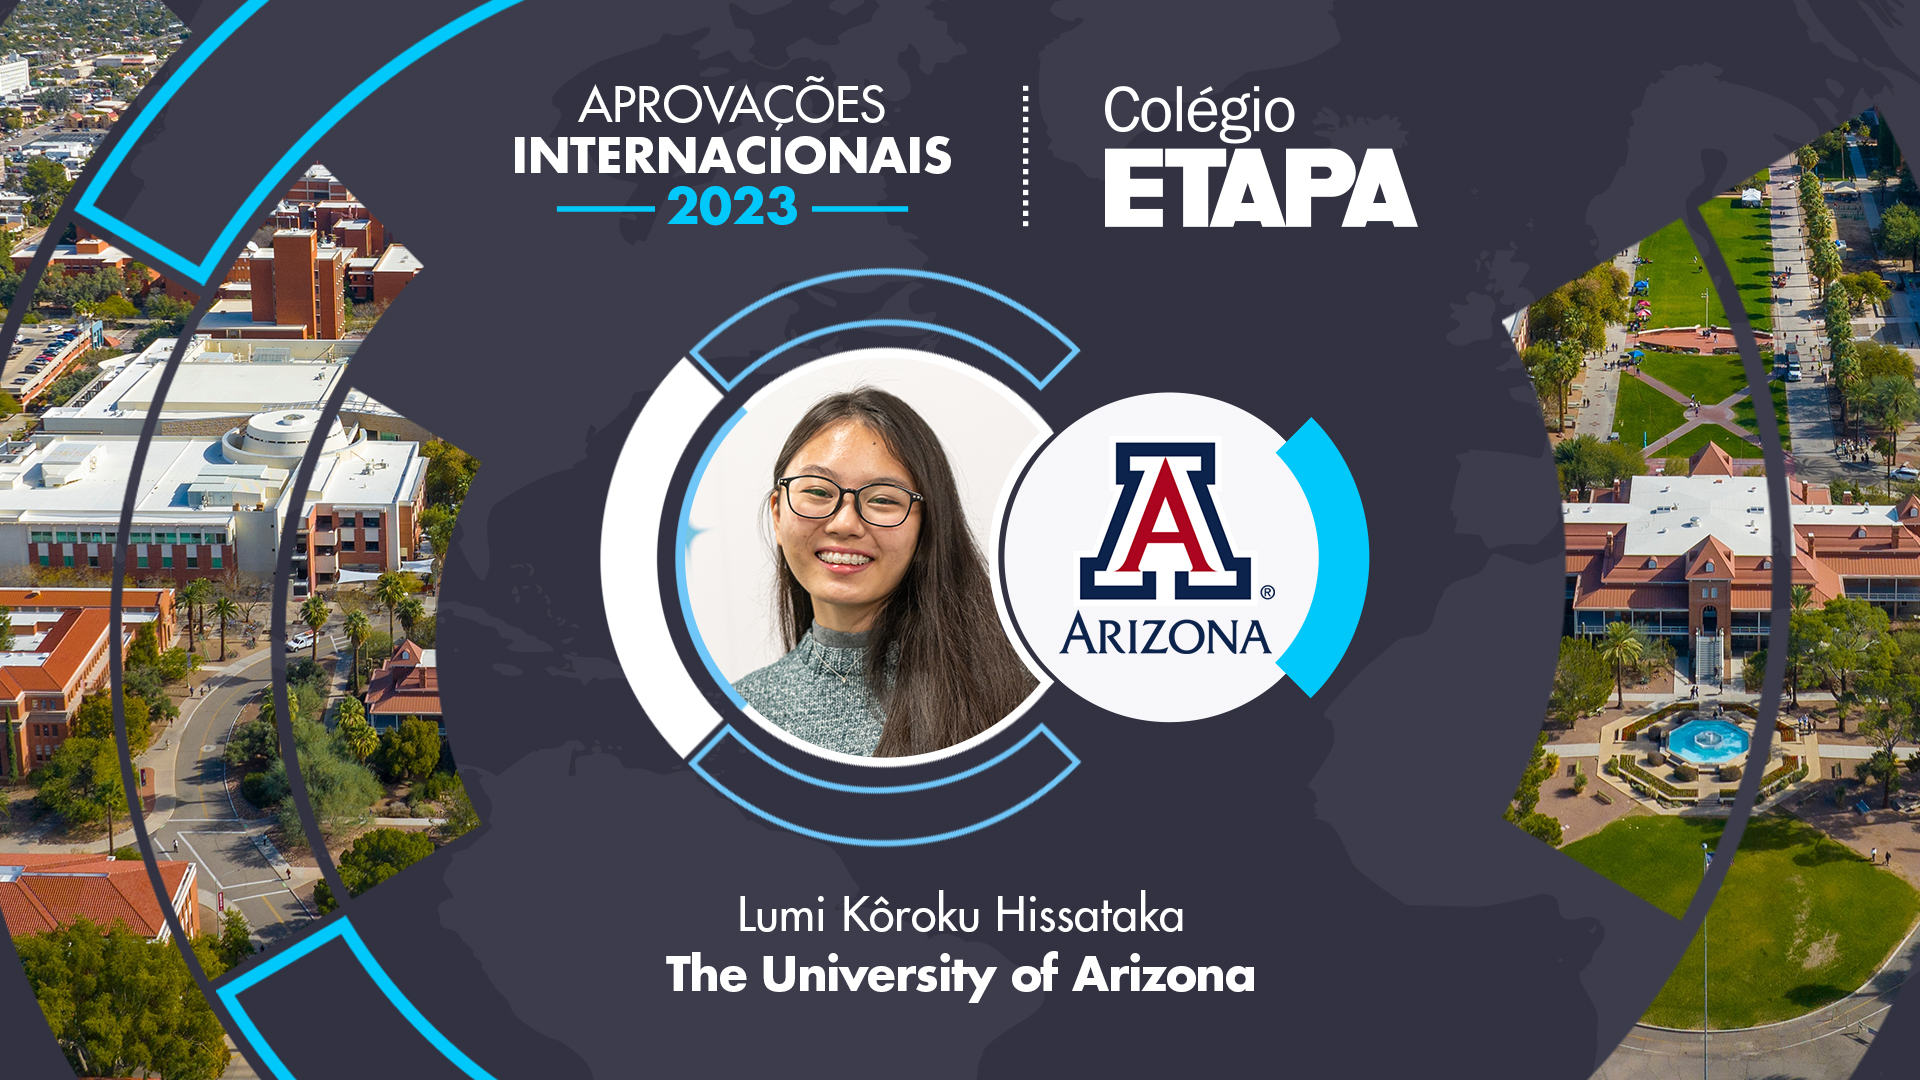 Lumi Kôroku Hissataka vai cursar a graduação na The University of Arizona, nos Estados Unidos. 